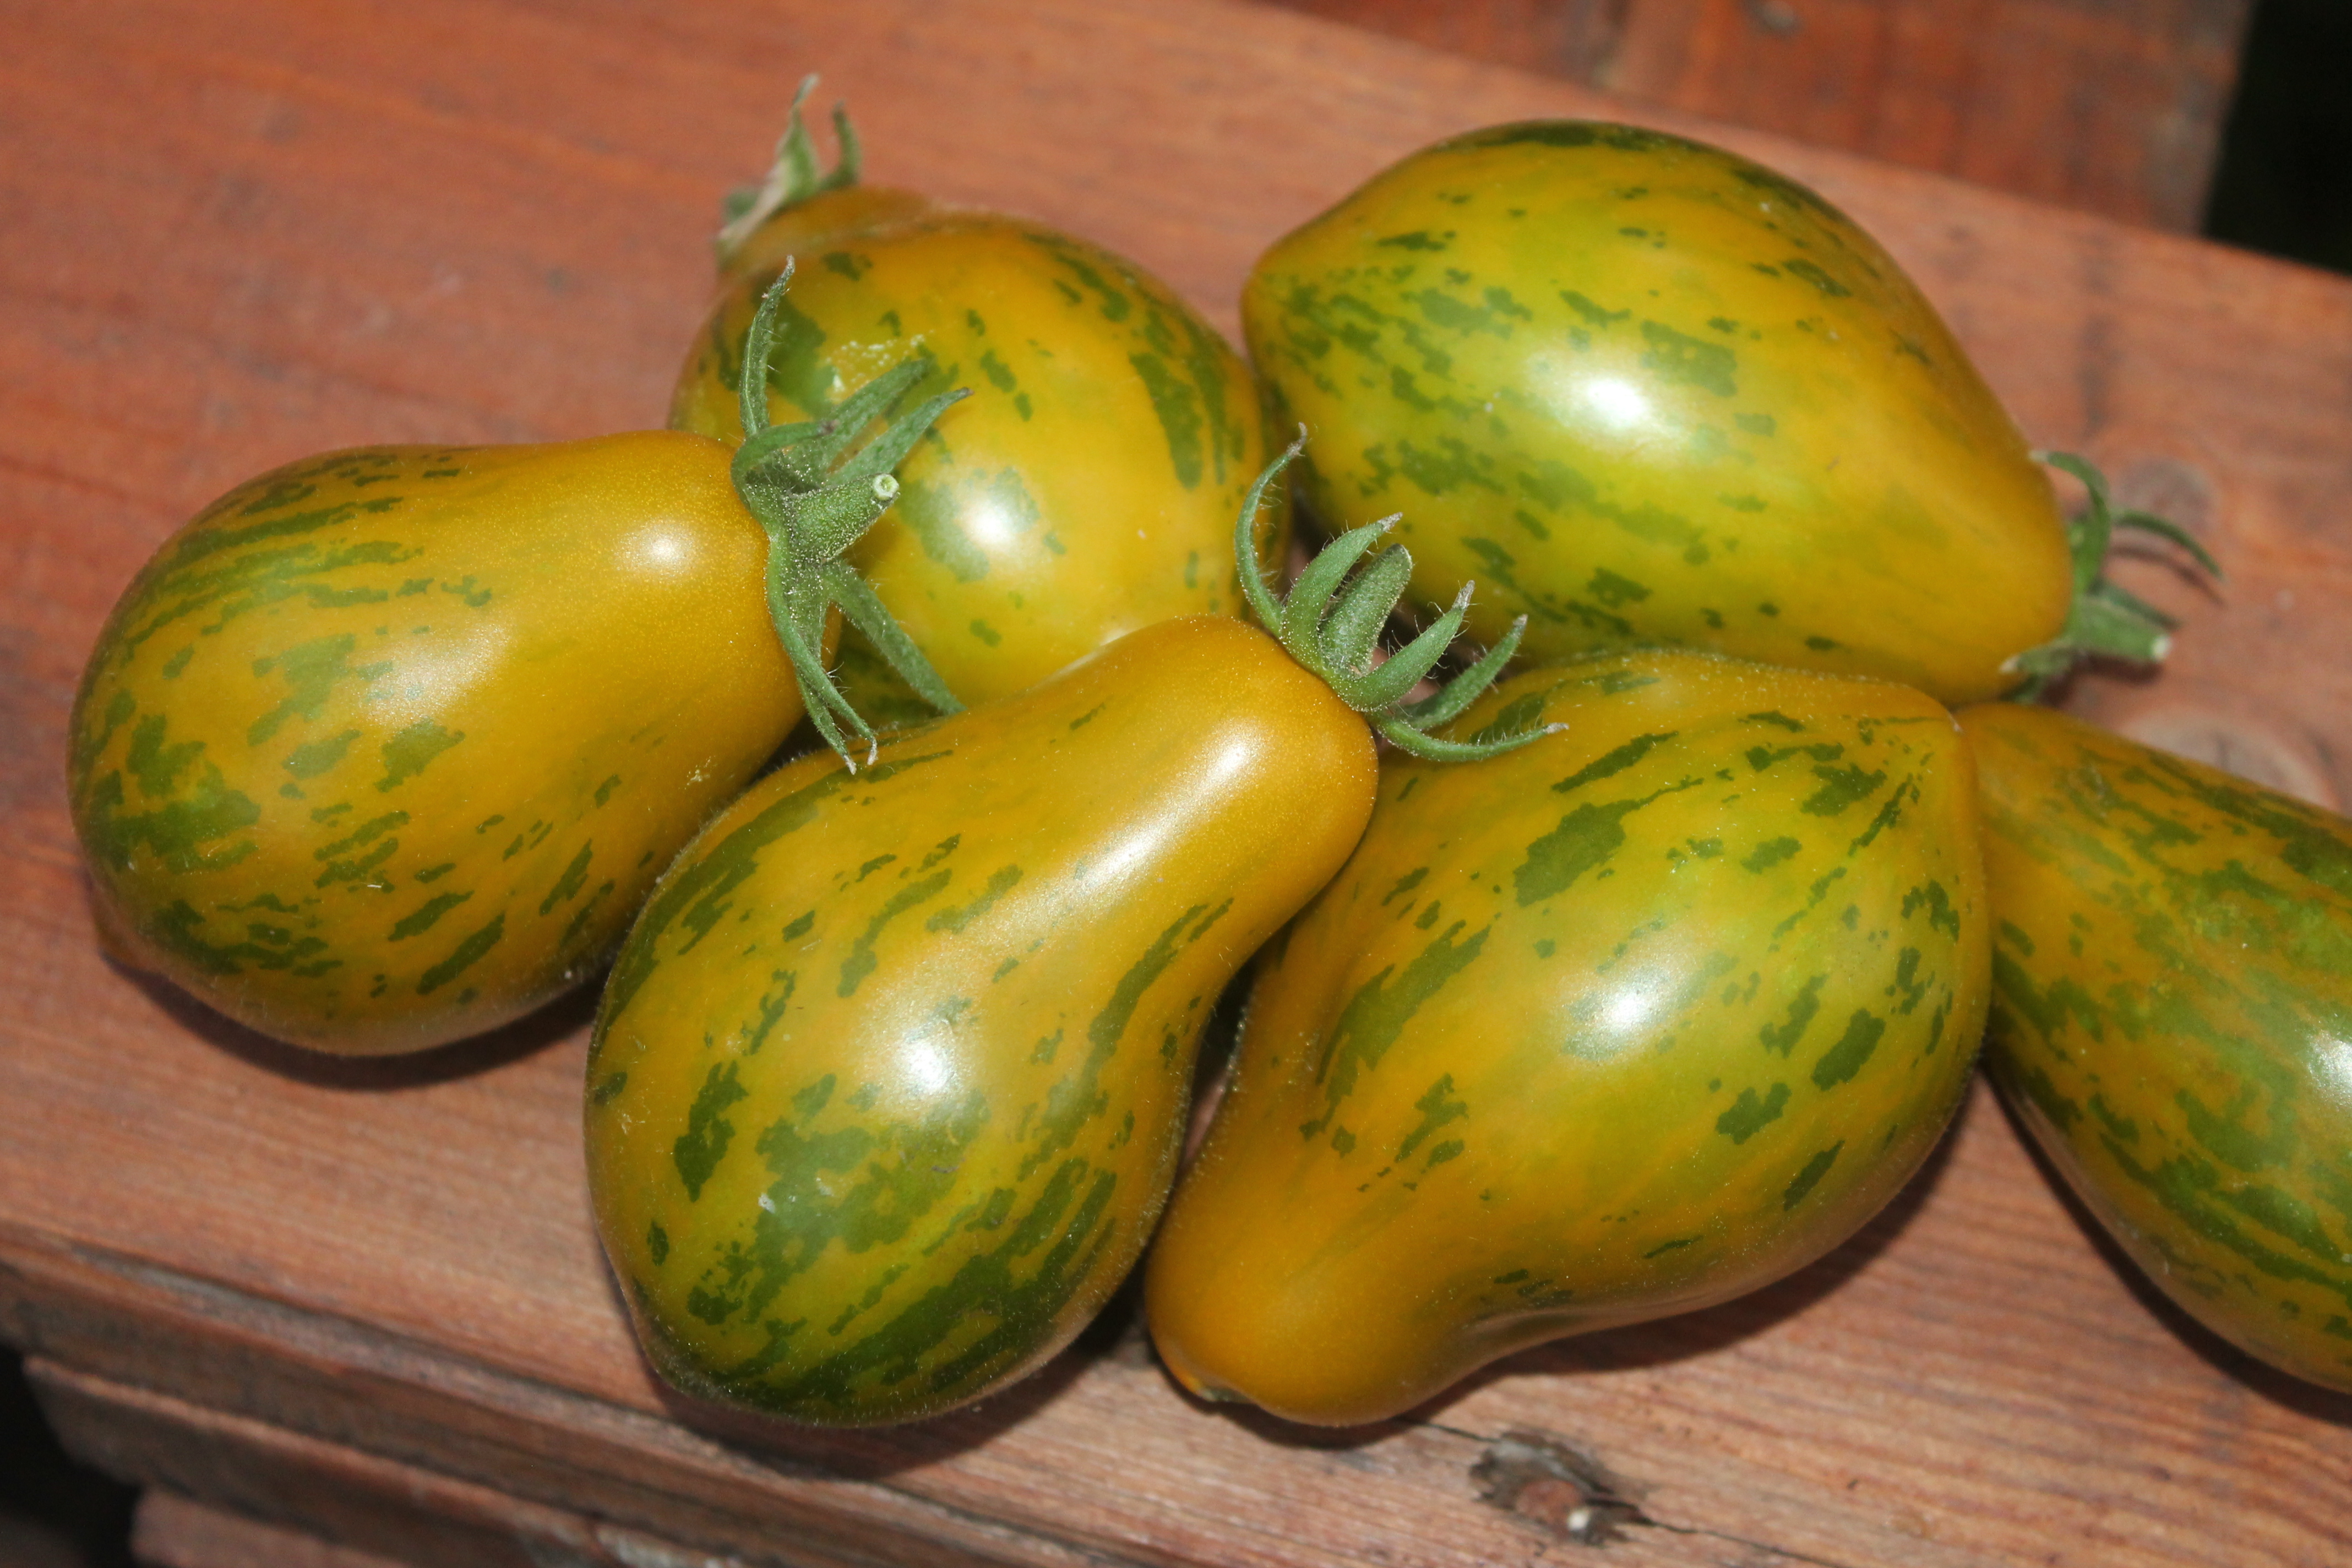 Описание сорта томата майкл поллан, особенности выращивания и уход